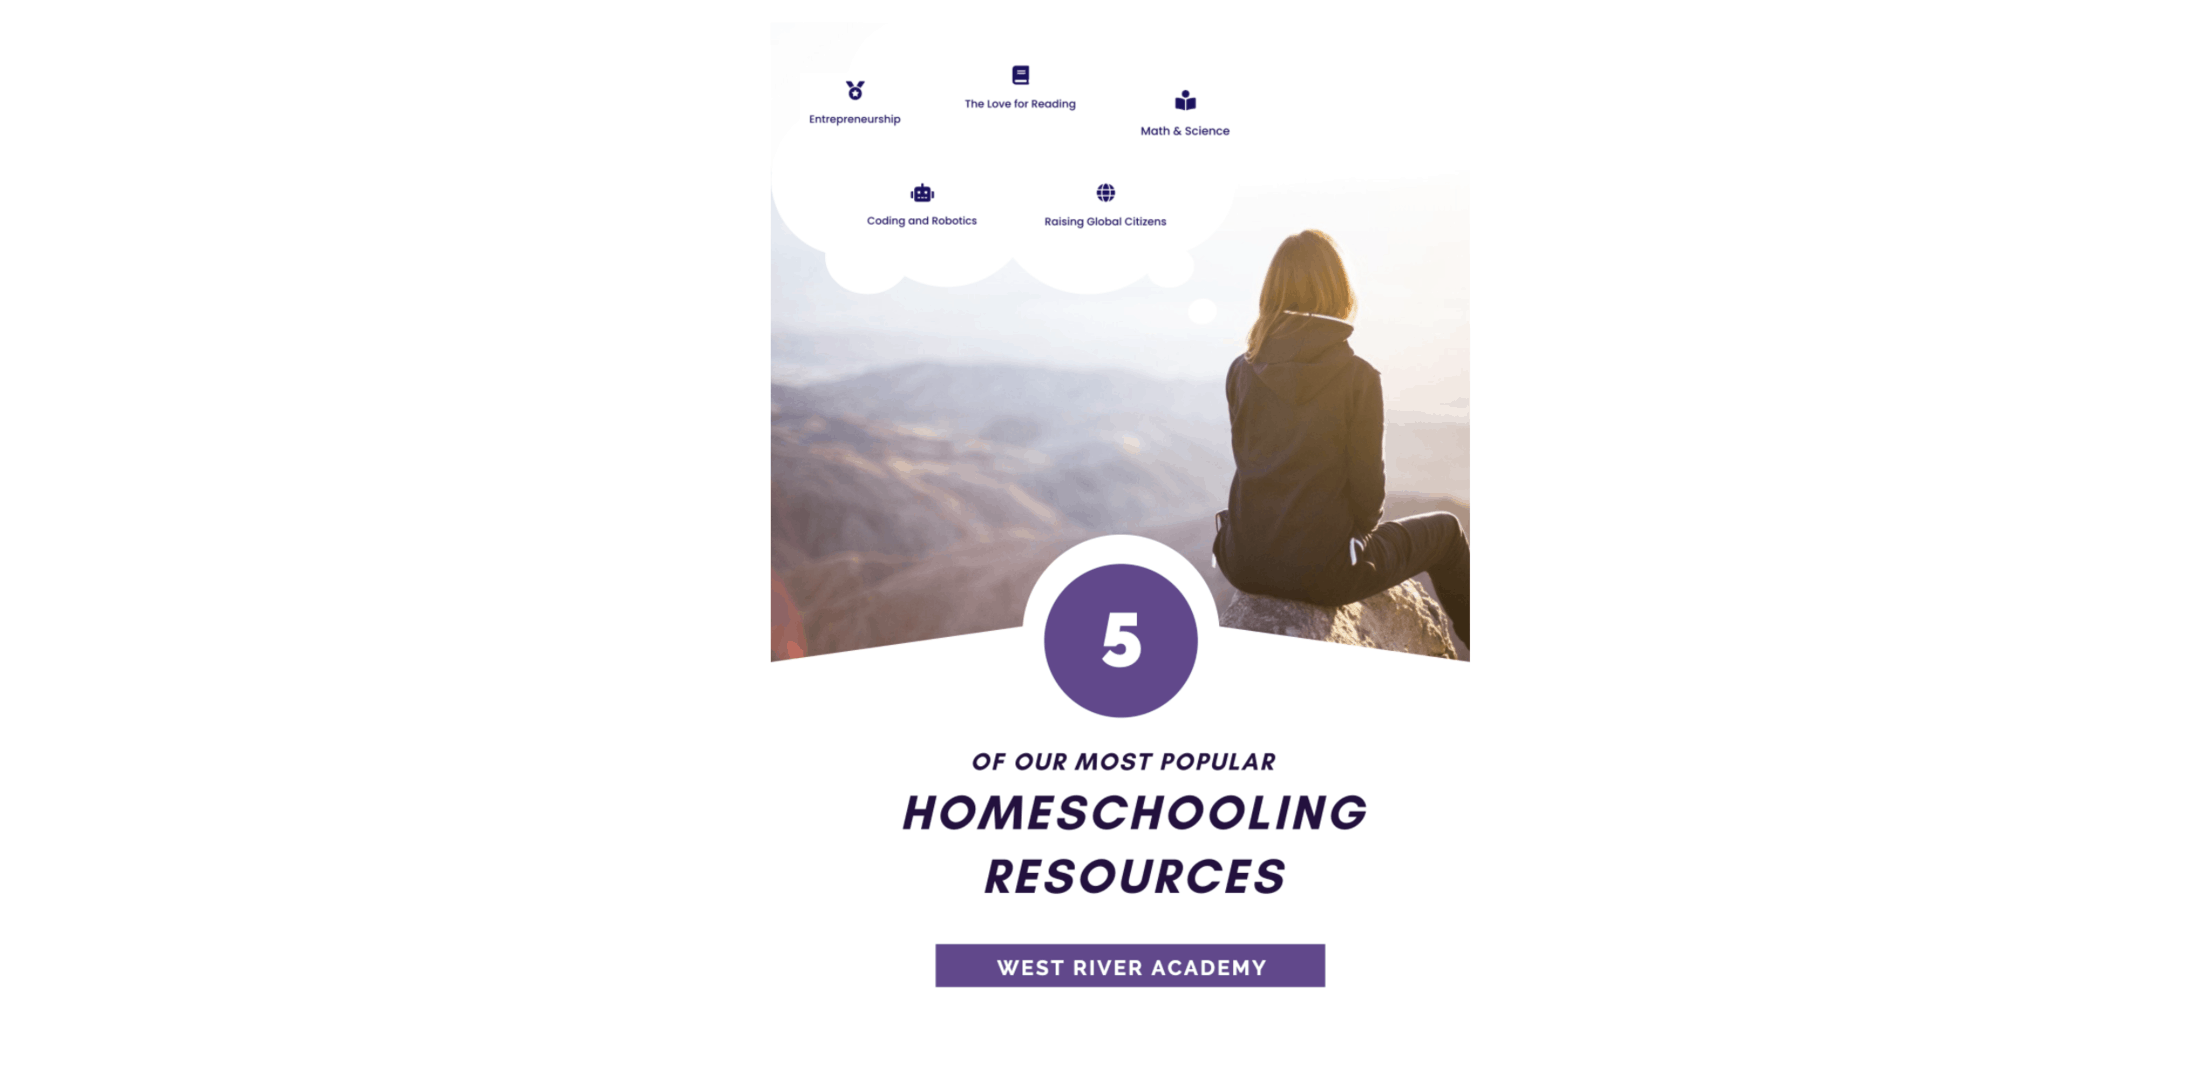 5 Homeschooling Resources